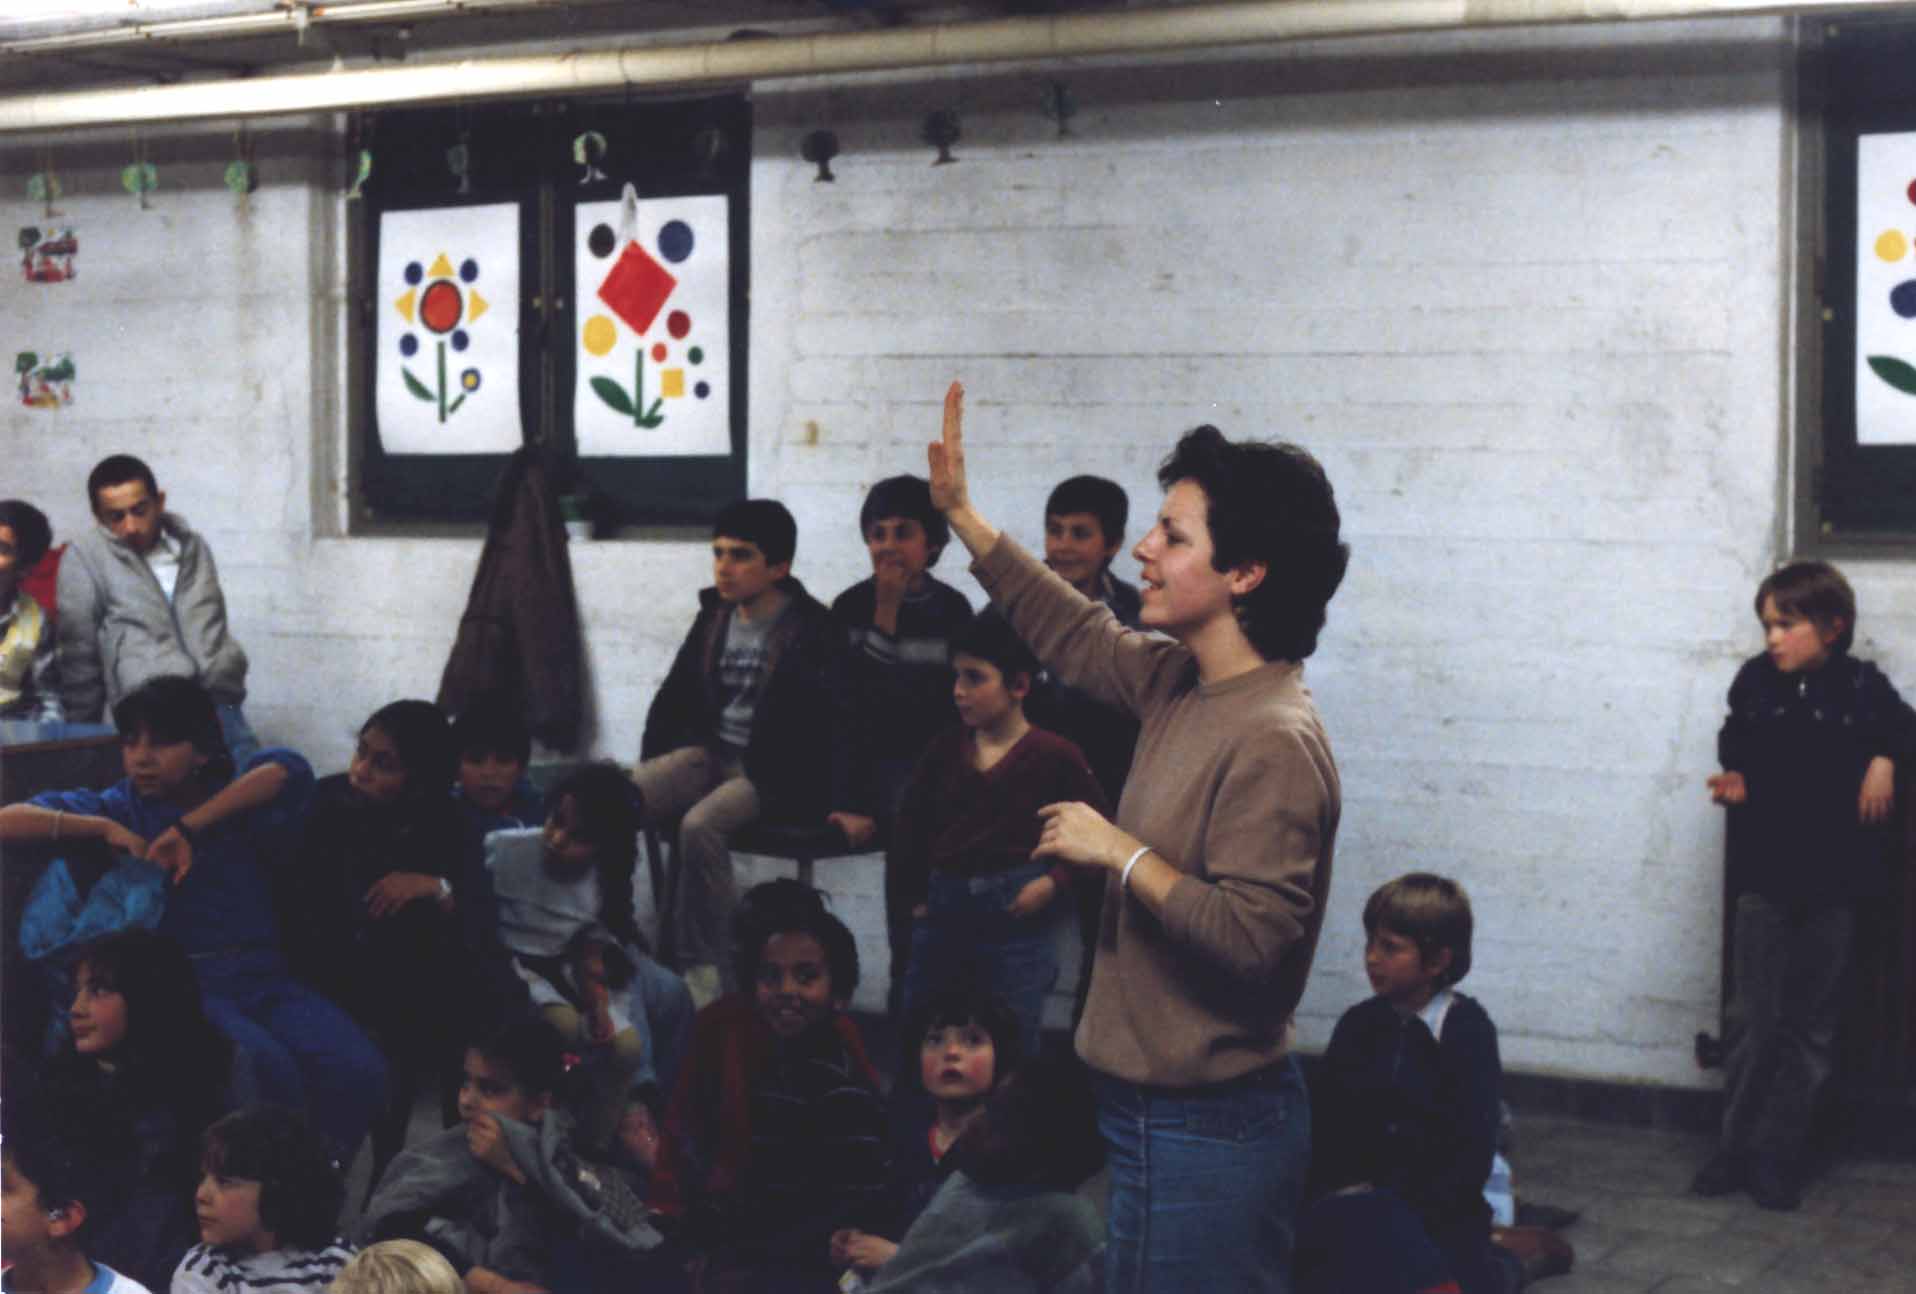 Iuccia Saponara anime une activit� parascolaire - 1985